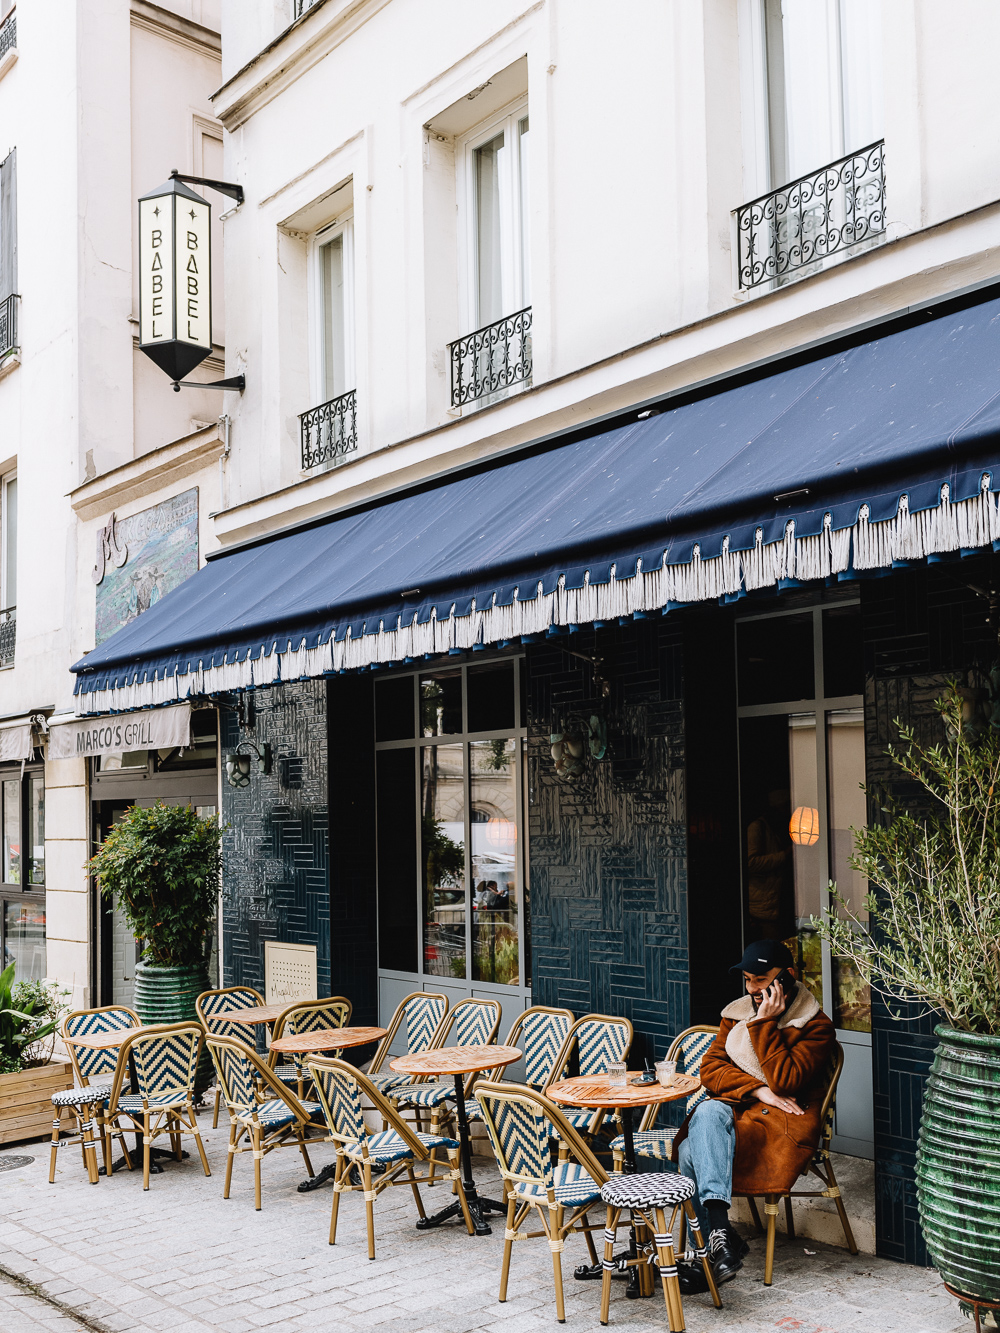 De beste budget hotels in Parijs